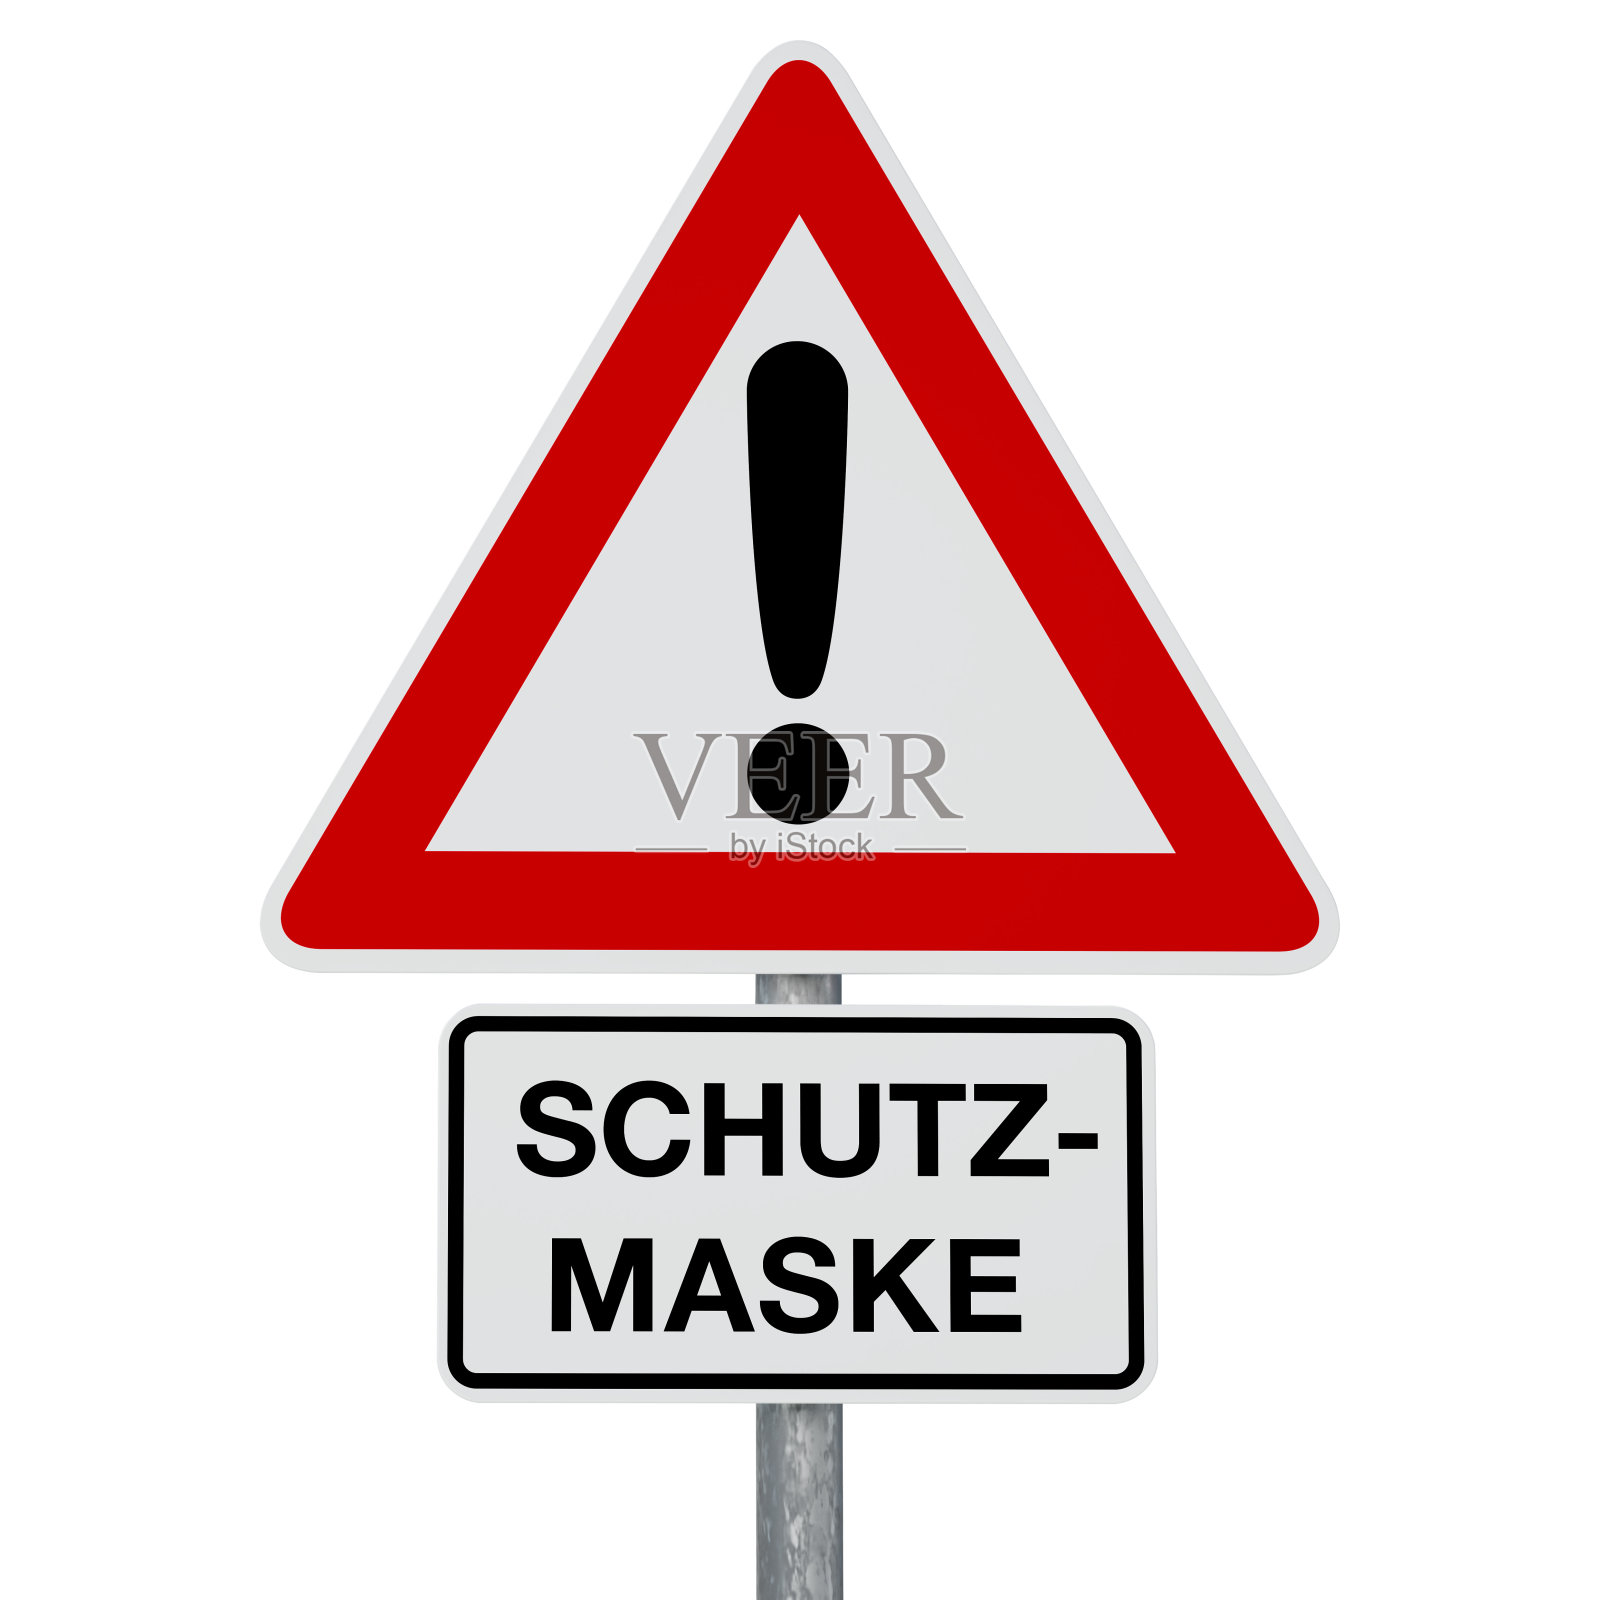 警告- SCHUTZMASKE -德语文本-数字生成的图像-剪切路径包括插画图片素材